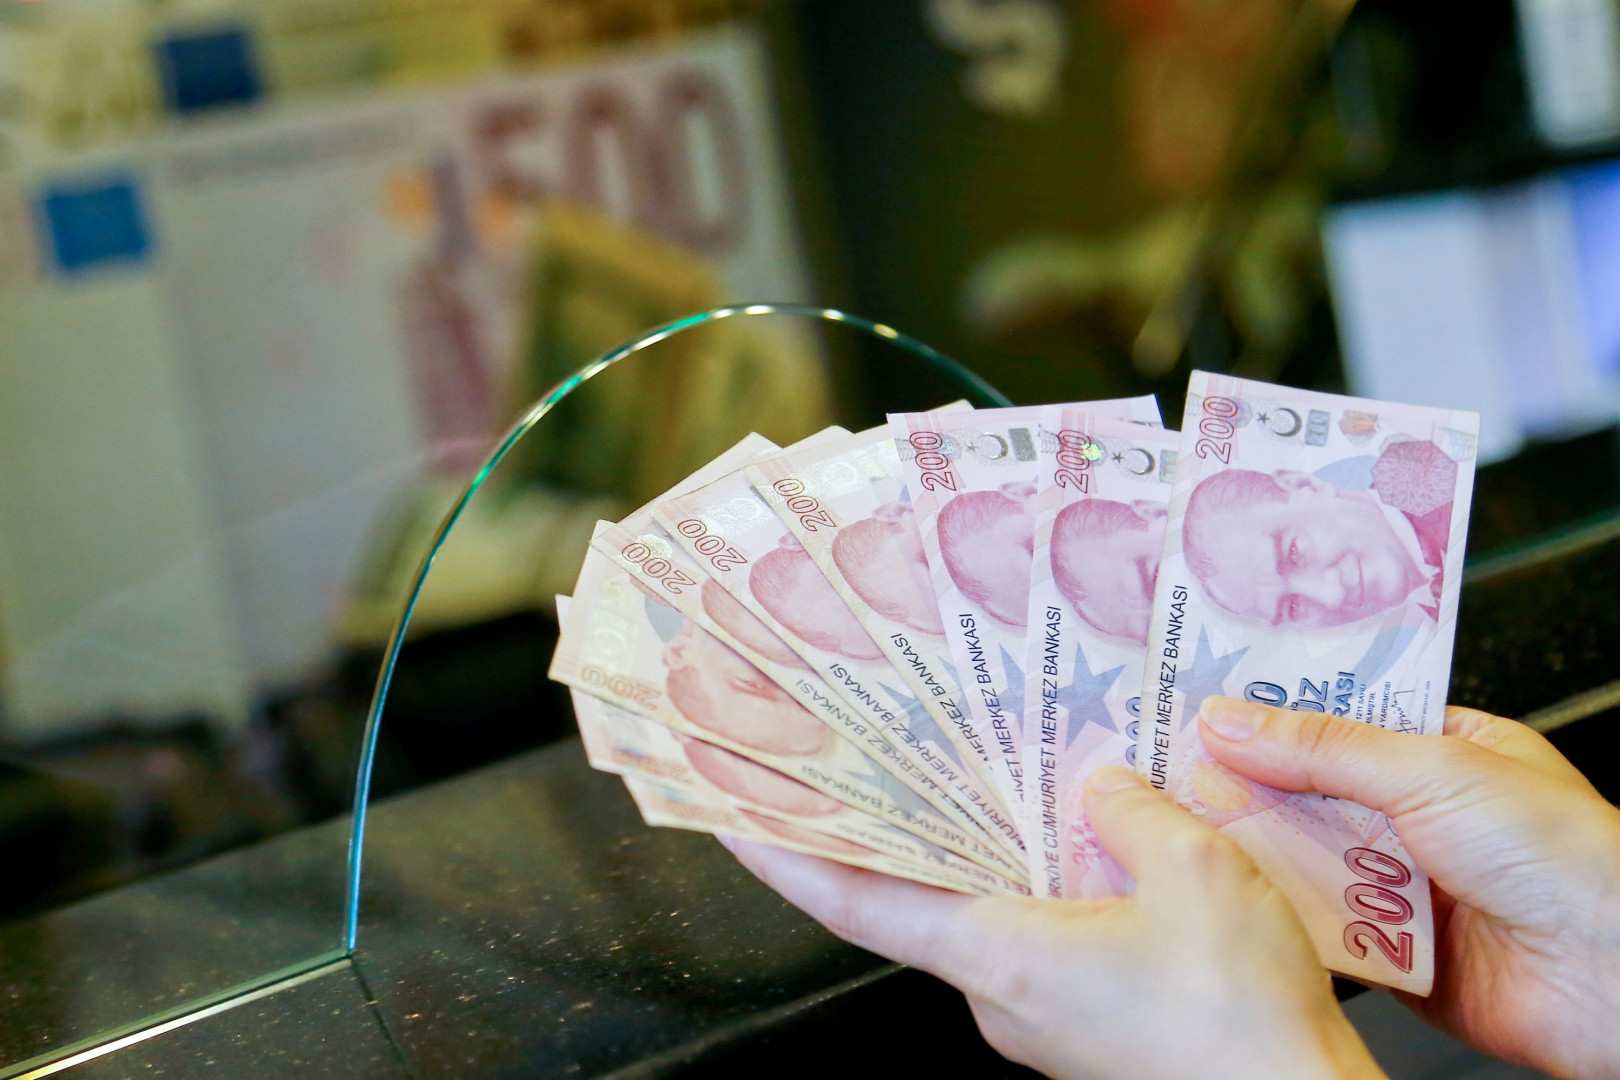 "فيتش" تغيّر نظرتها للاقتصاد التركي من "مستقر" إلى "سلبي"